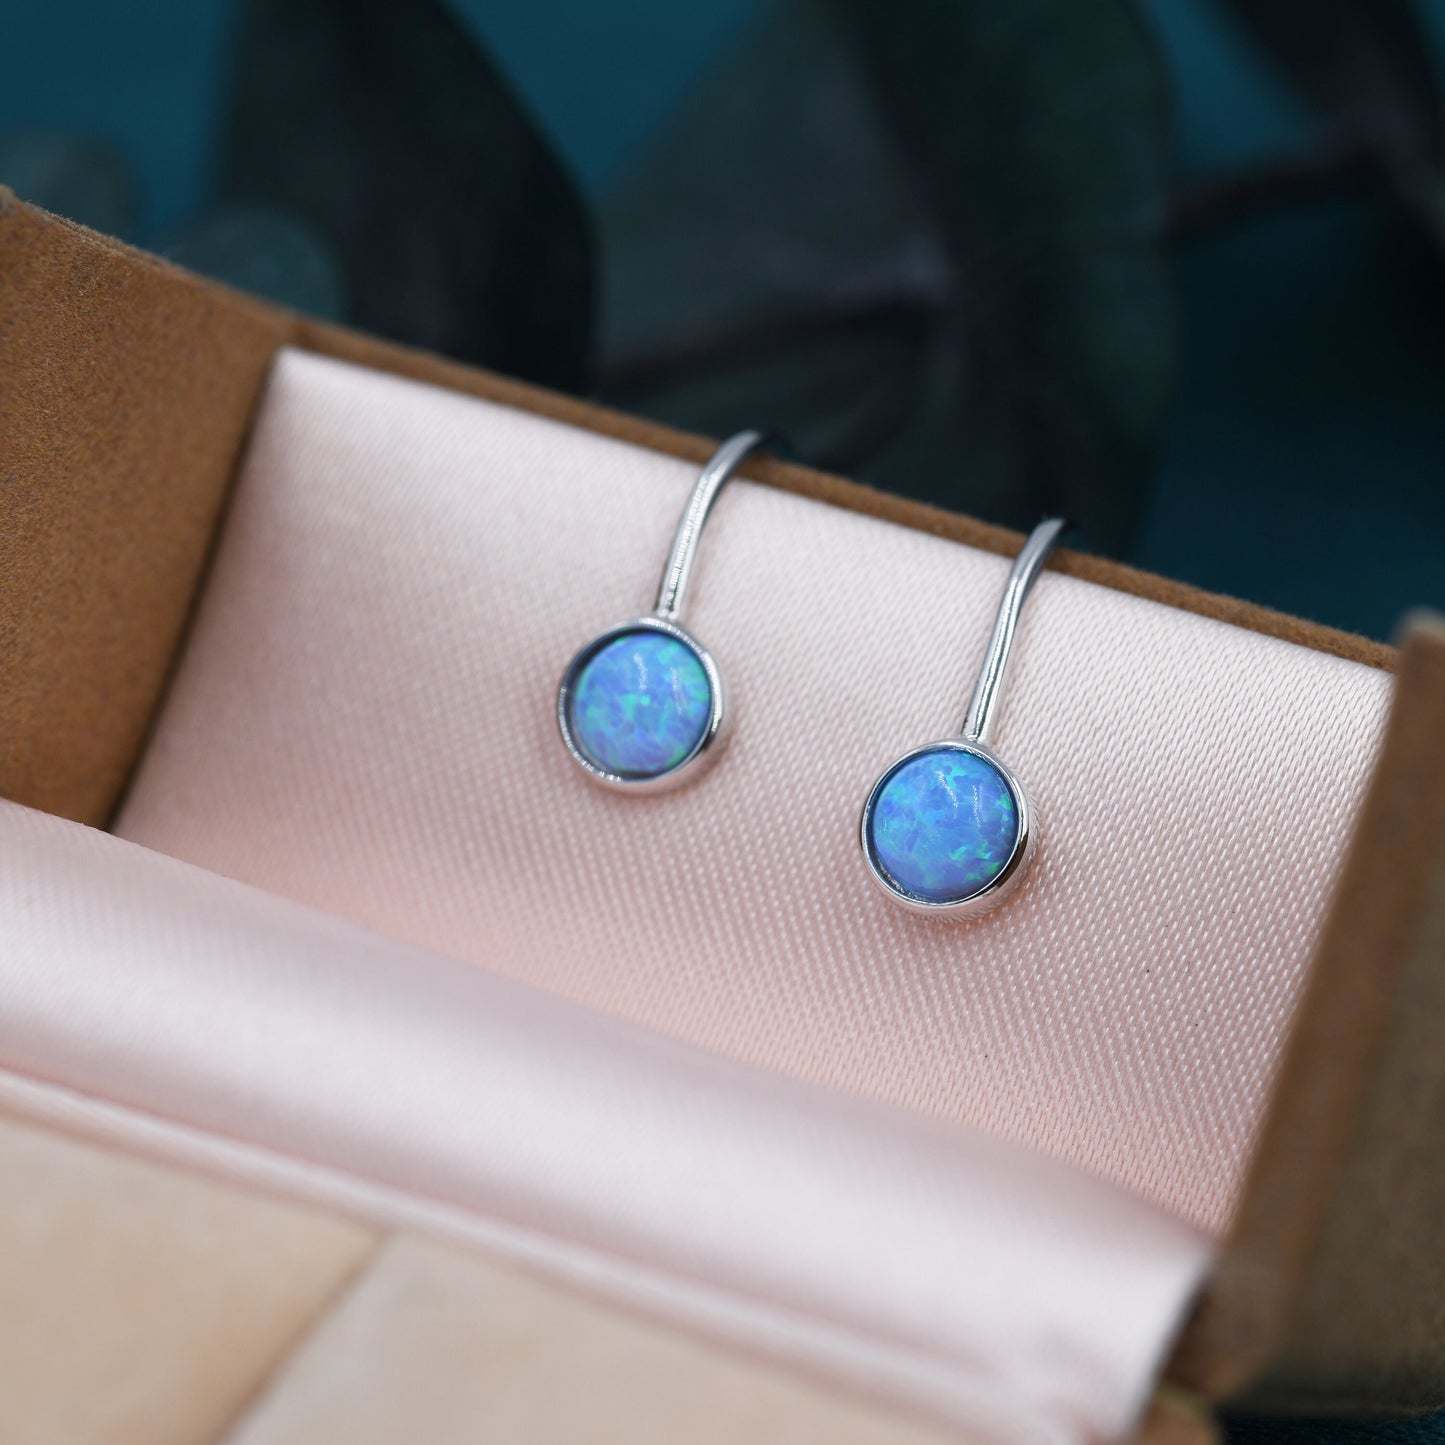 Sterling Silver Blue Opal Drop Earrings in Sterling Silver, Round Blue Opal Hook Earrings, Delicate Opal Earrings, Lab Opal